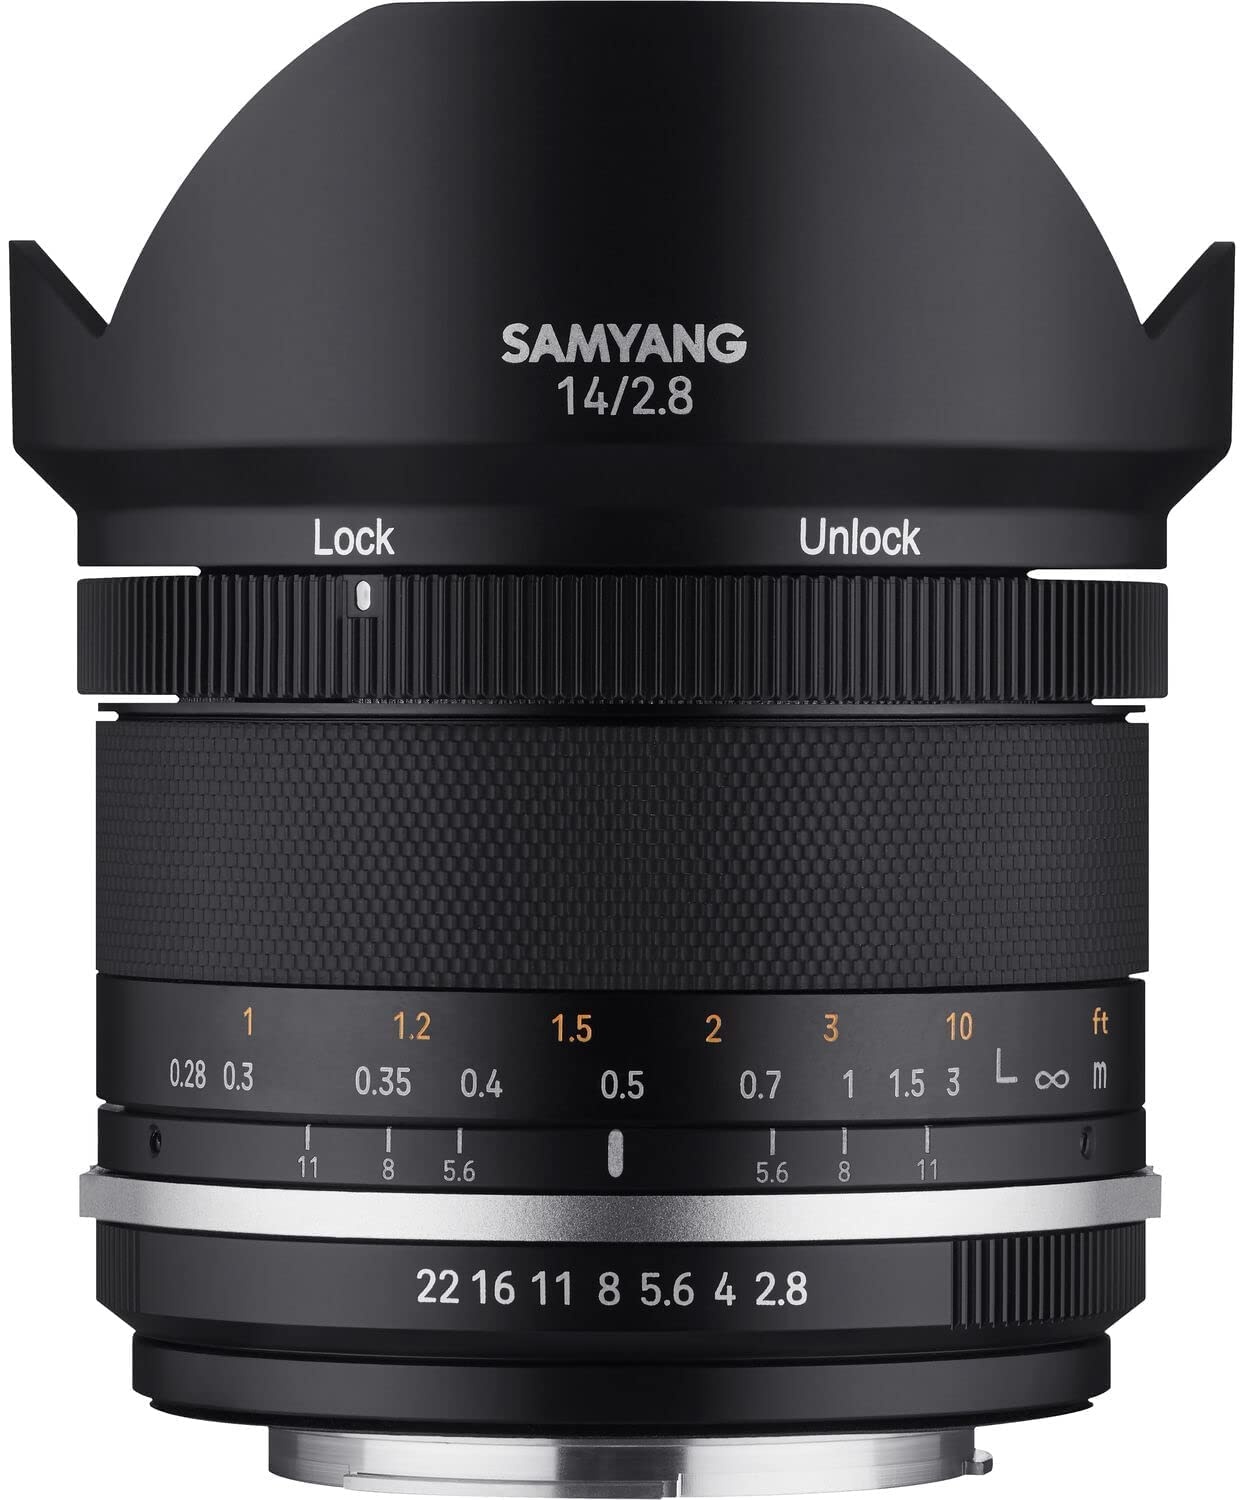 Samyang 22985 MF 14mm F2,8 MK2 für Canon EF – Weitwinkel Objektiv manueller Fokus für Vollformat und APS-C Festbrennweite Canon EF Mount, 2 Generation EOS 7D Mark II, EOS 5D Mark IV, EOS 77D, EOS 90D